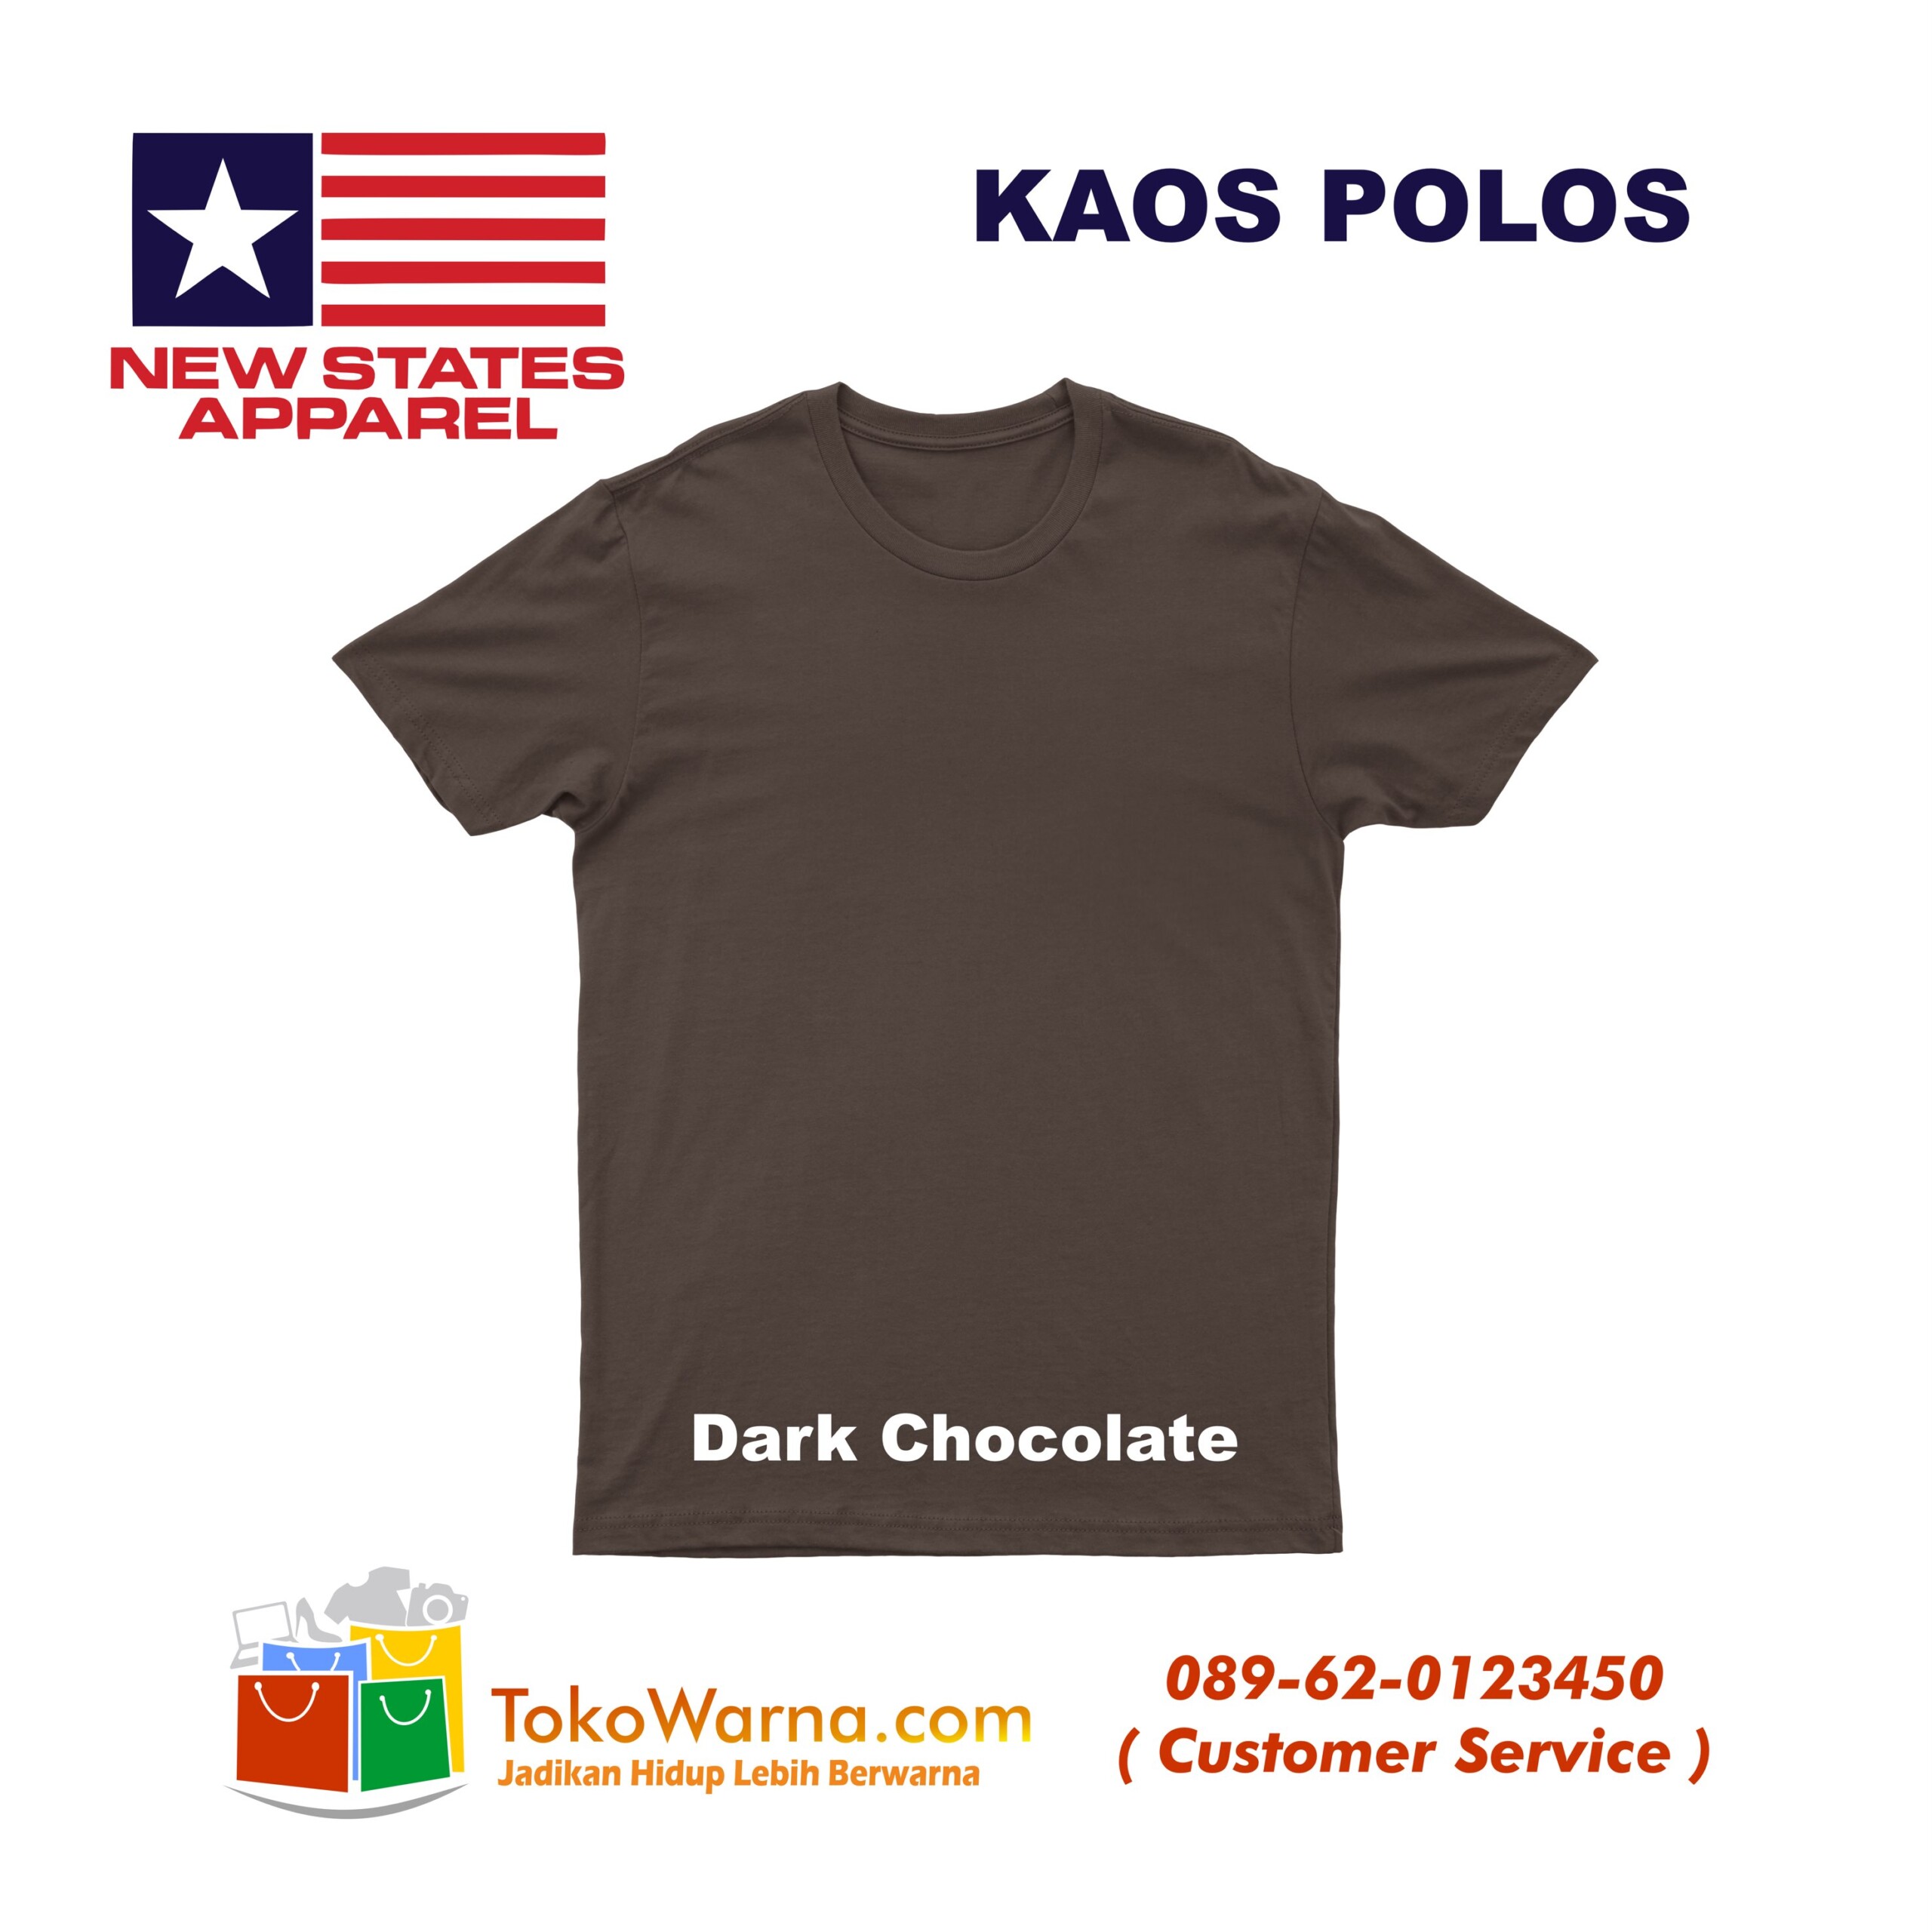 (NSA) New States Apparel Soft Tee 30s Kaos Polos Dark Chocolate